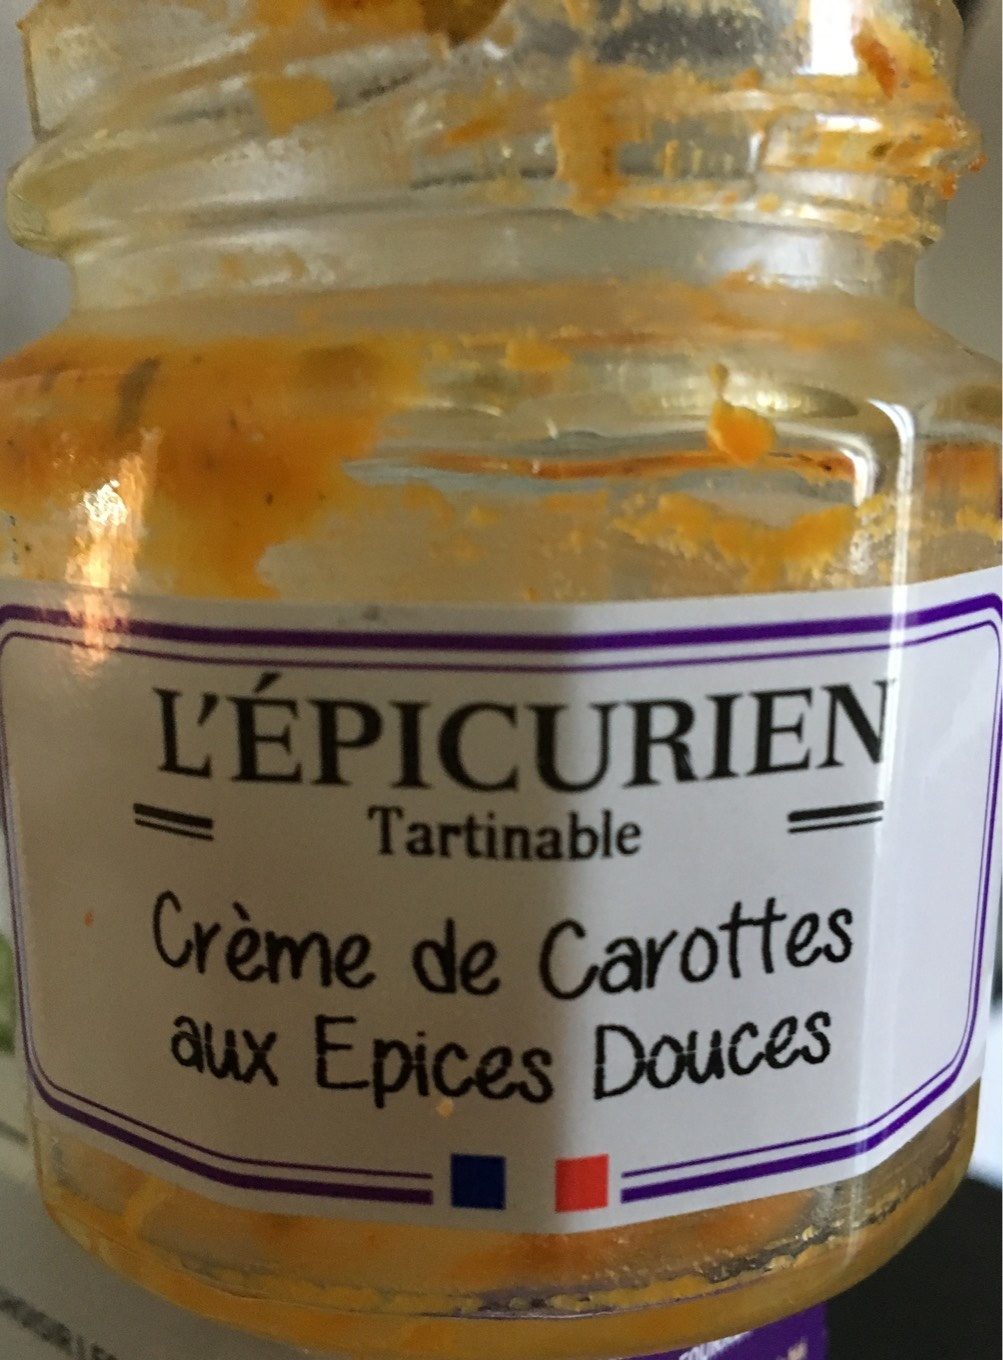 Creme de carottes aux epices douces - Producto - fr